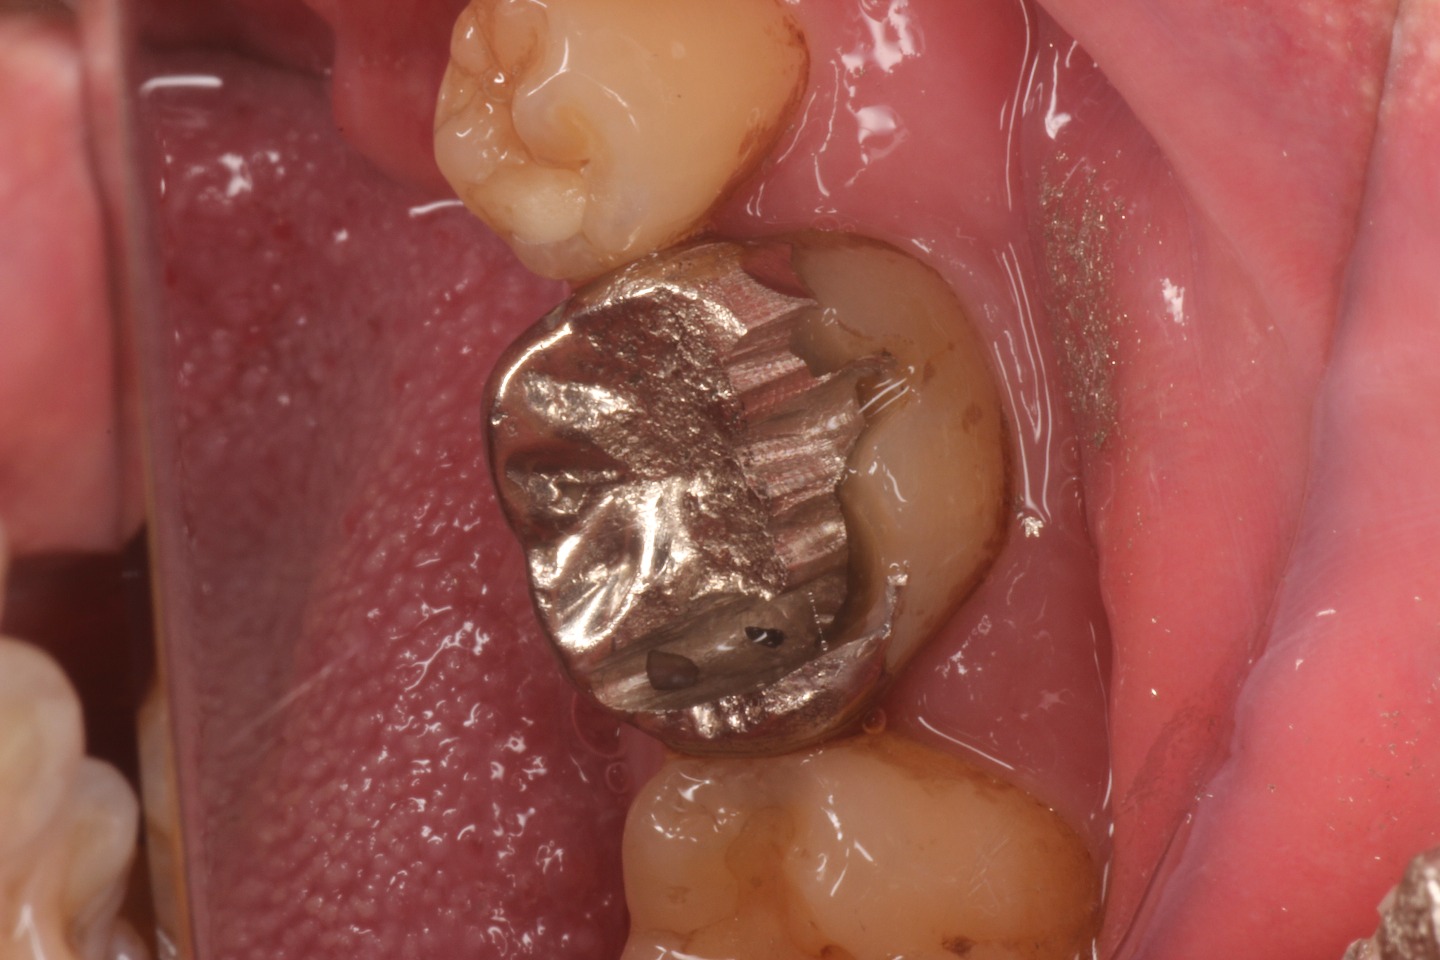 2.被せ物を除去することで、金属と歯質の隙間を確認。長期間に亘って唾液の進入があったことが疑われる。